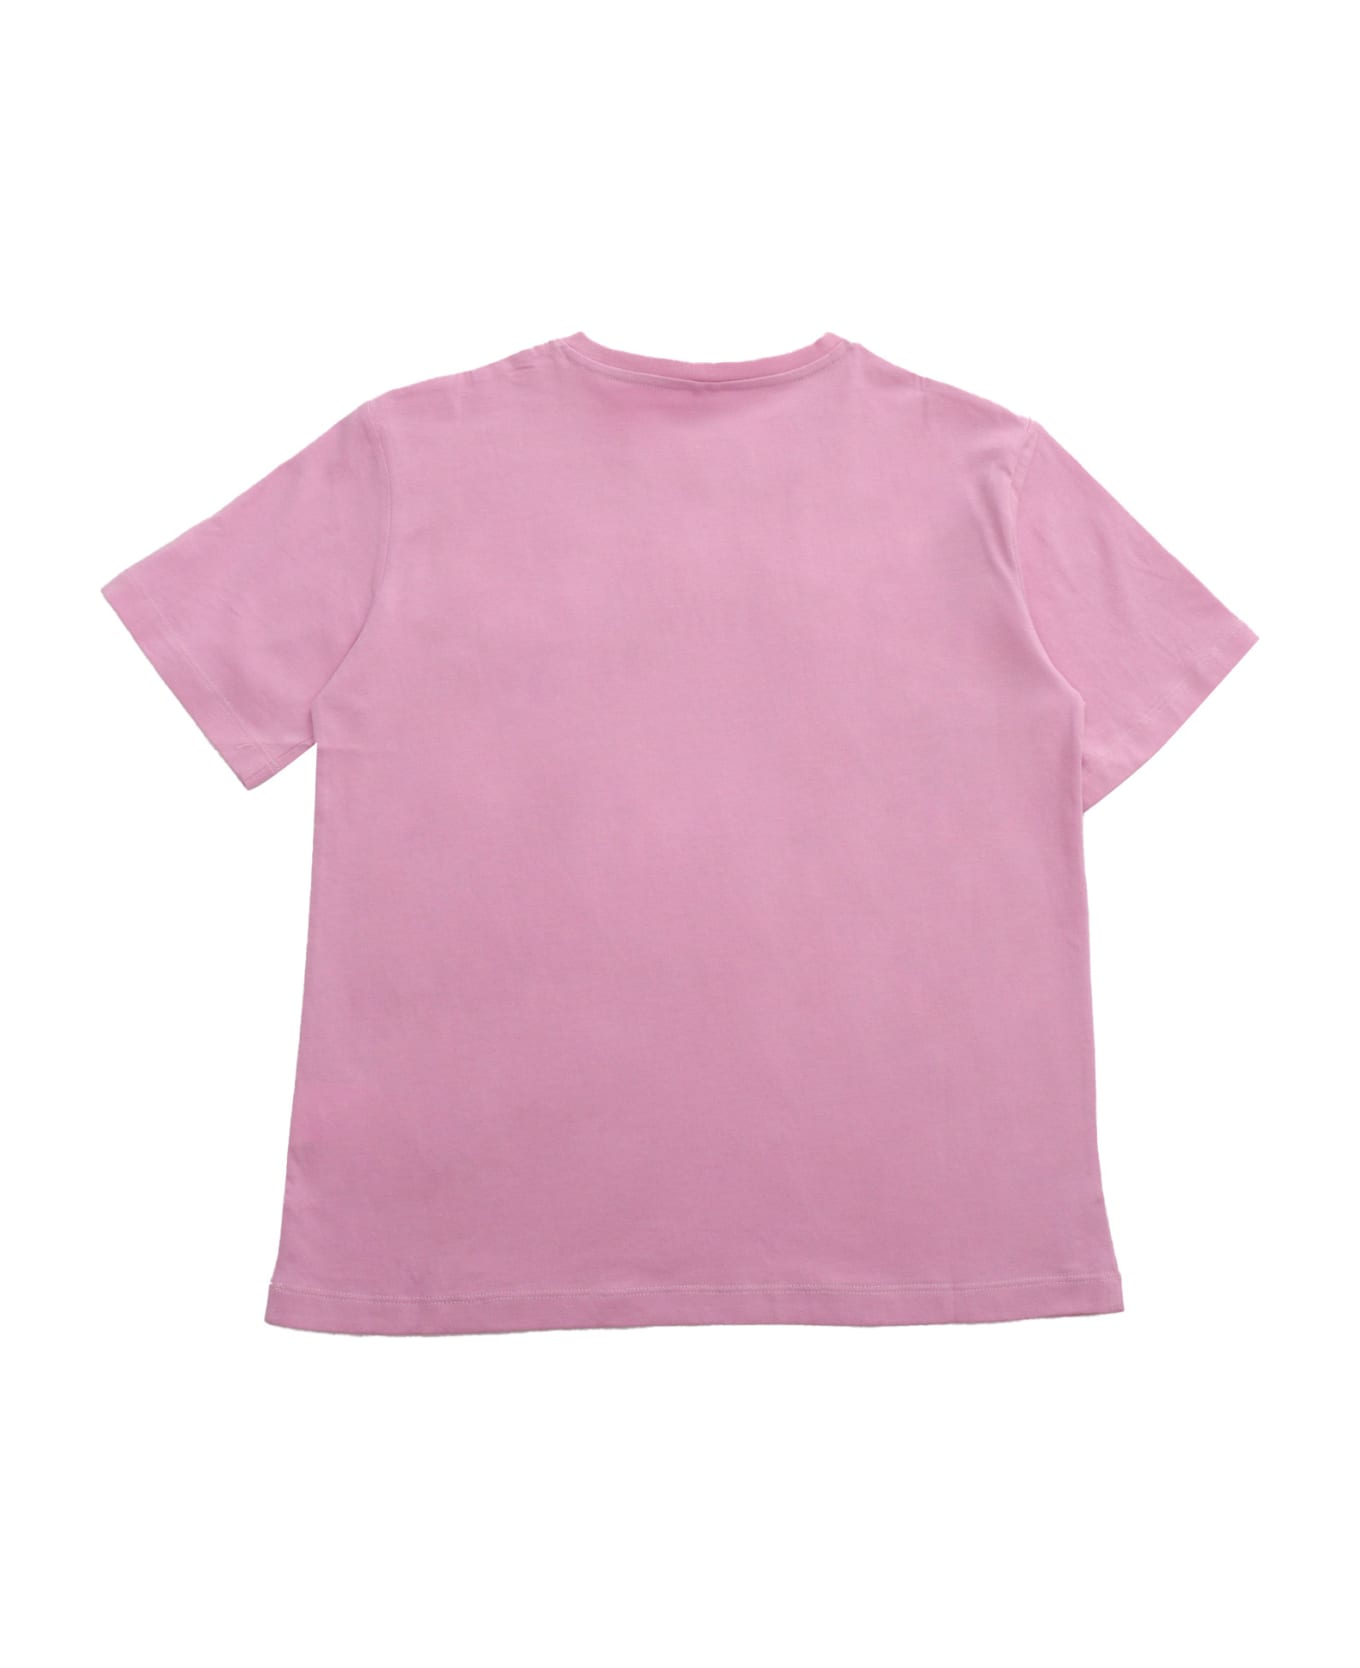 Stella McCartney Kids Pink T-shirt With Logo - PINK